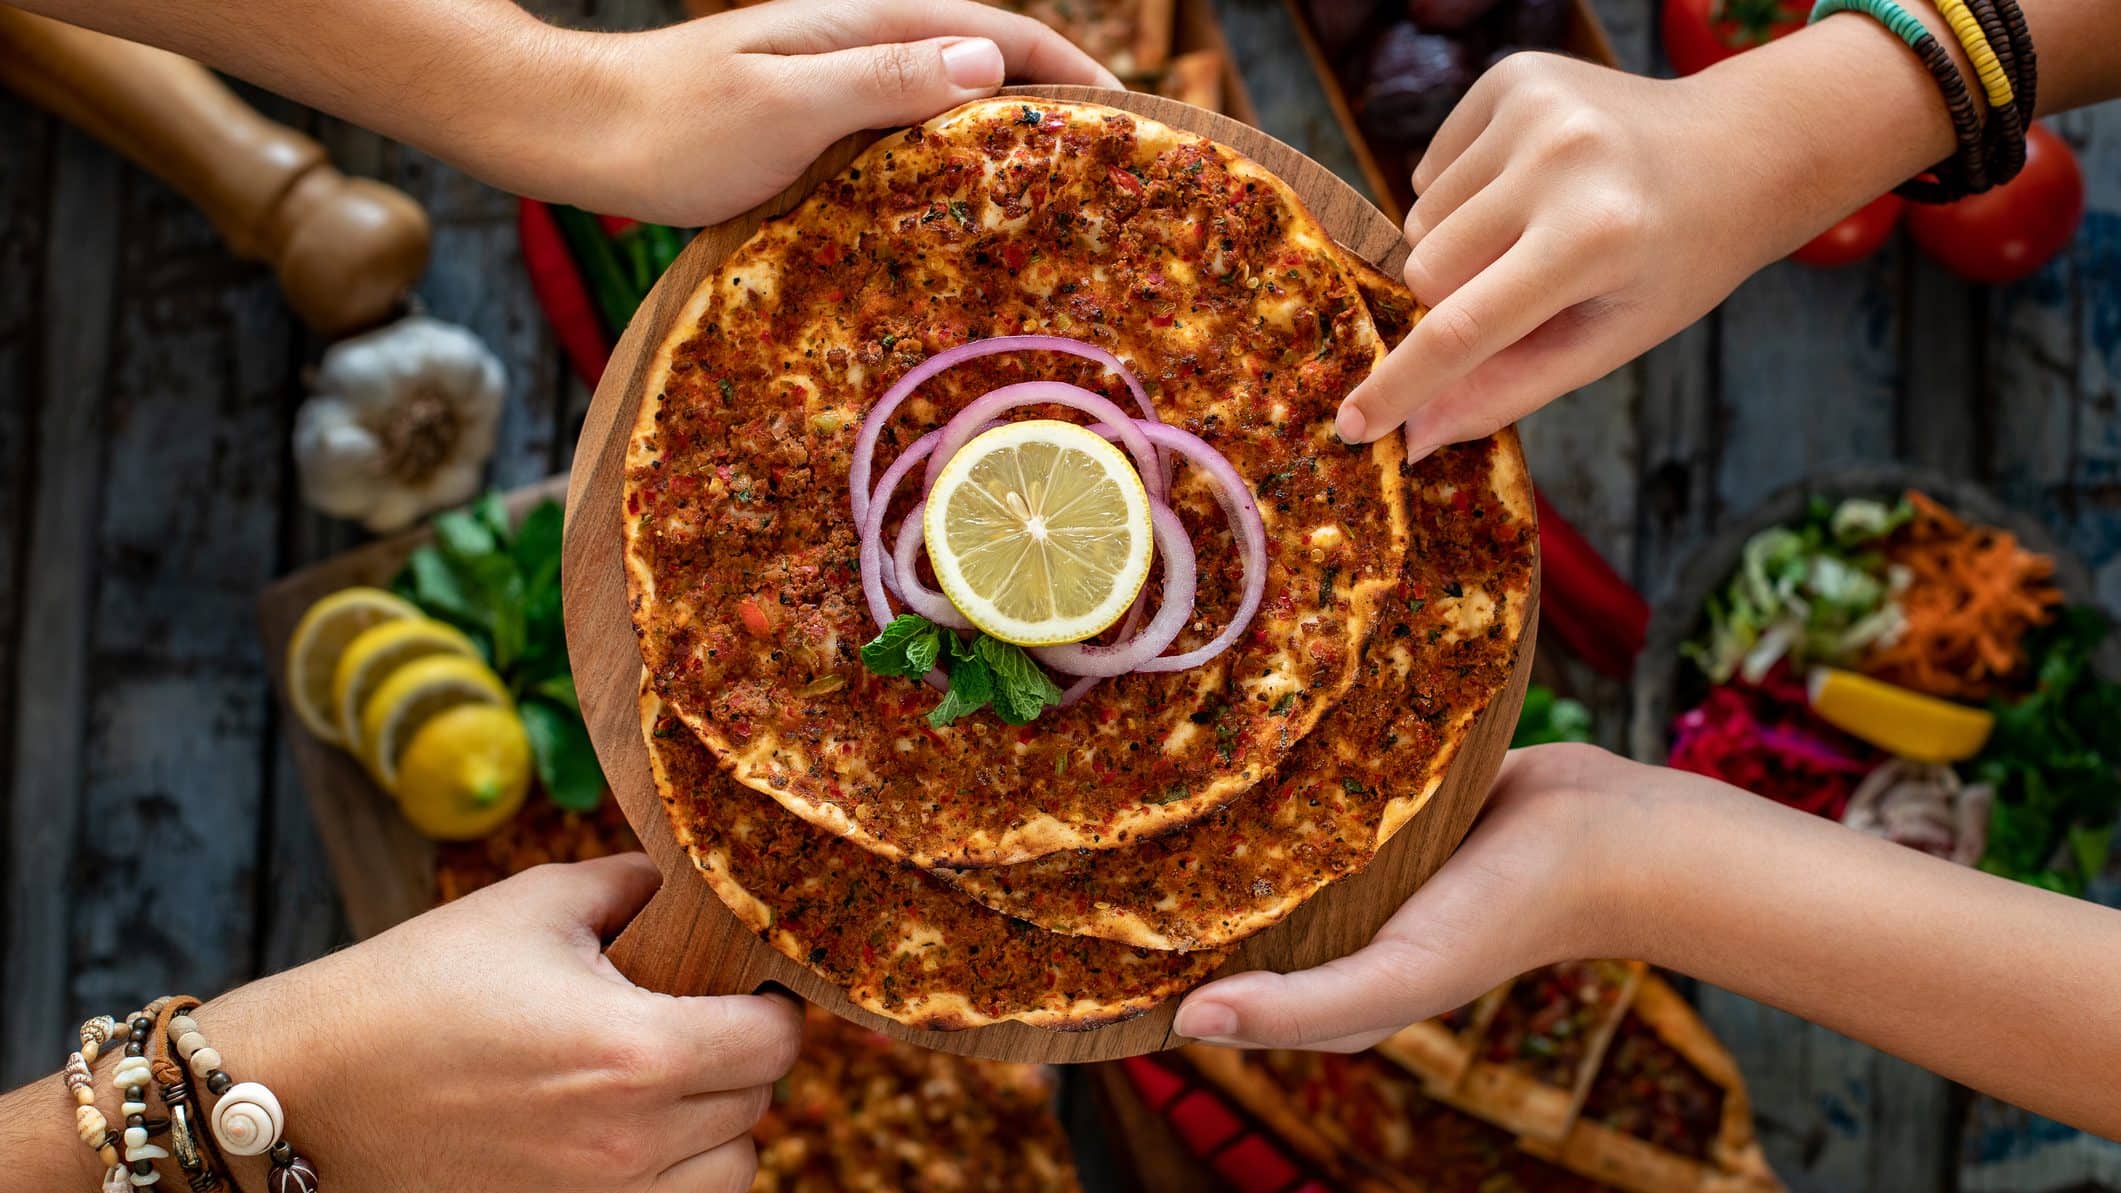 Mehrere türkische Pizzen, genannt Lahmacun, liegen zum Verzehr auf einem Holzbrett übereinander.